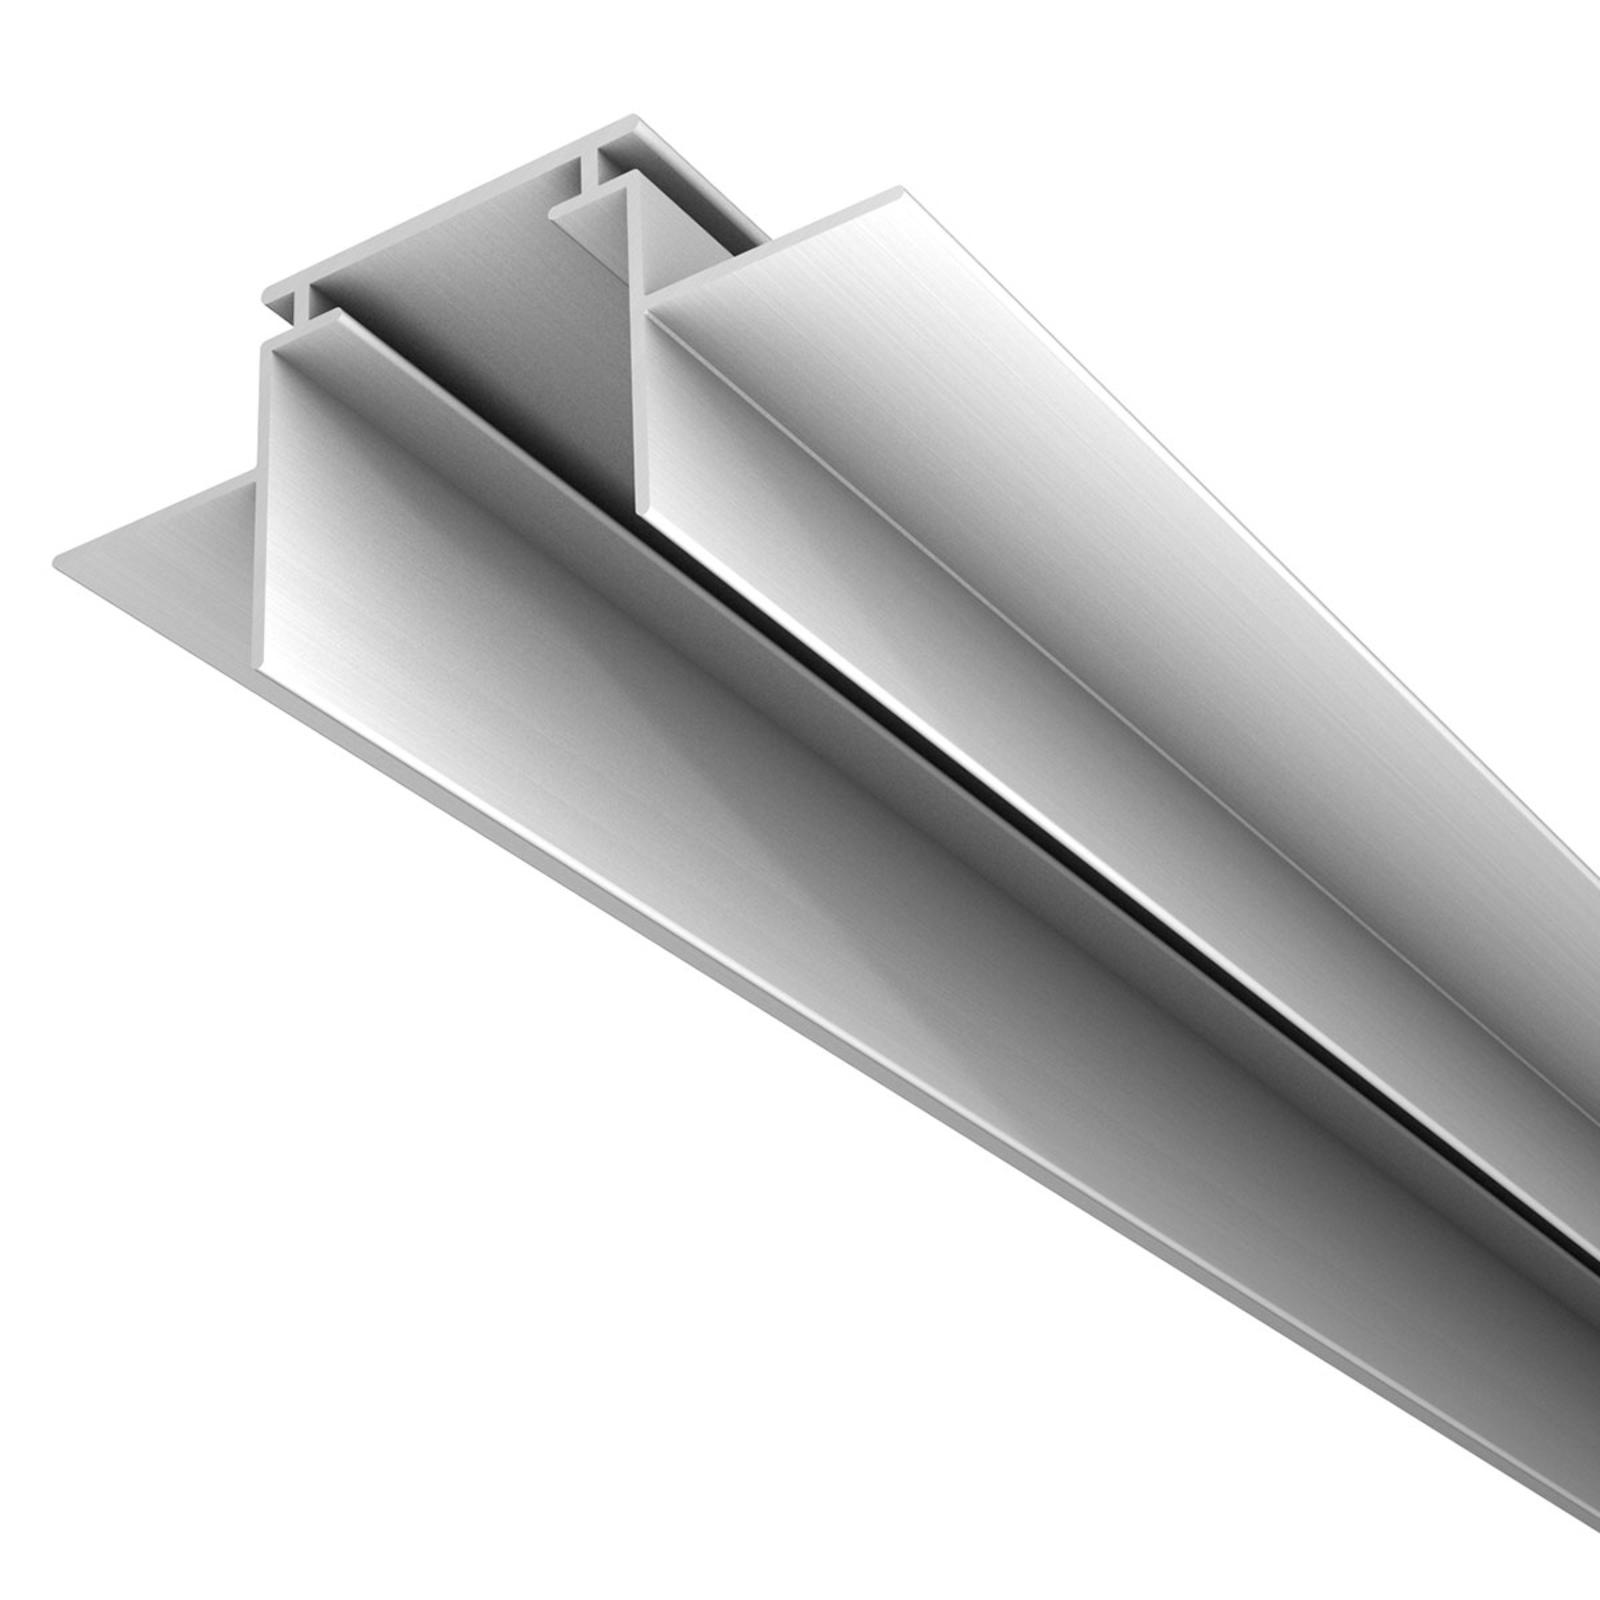 M28 LED alumínium profil, 66 mm széles tartóprofil